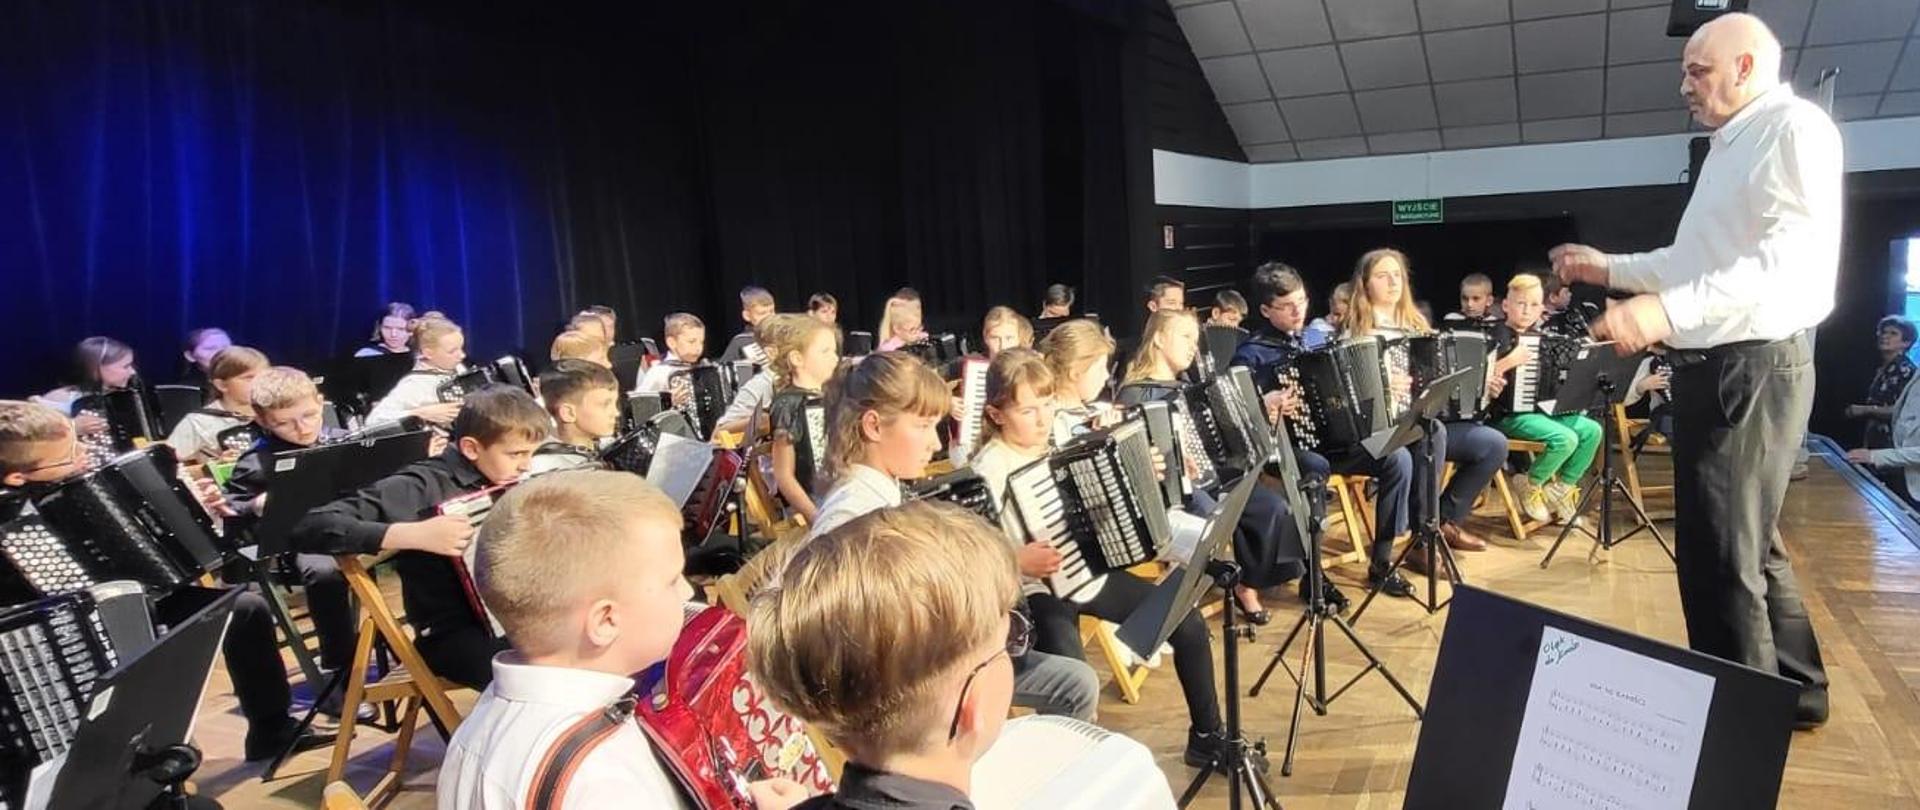 Na zdjęciu grupa kilkudziesięciu młodych akordeonistów, przed nimi stoi dyrygent